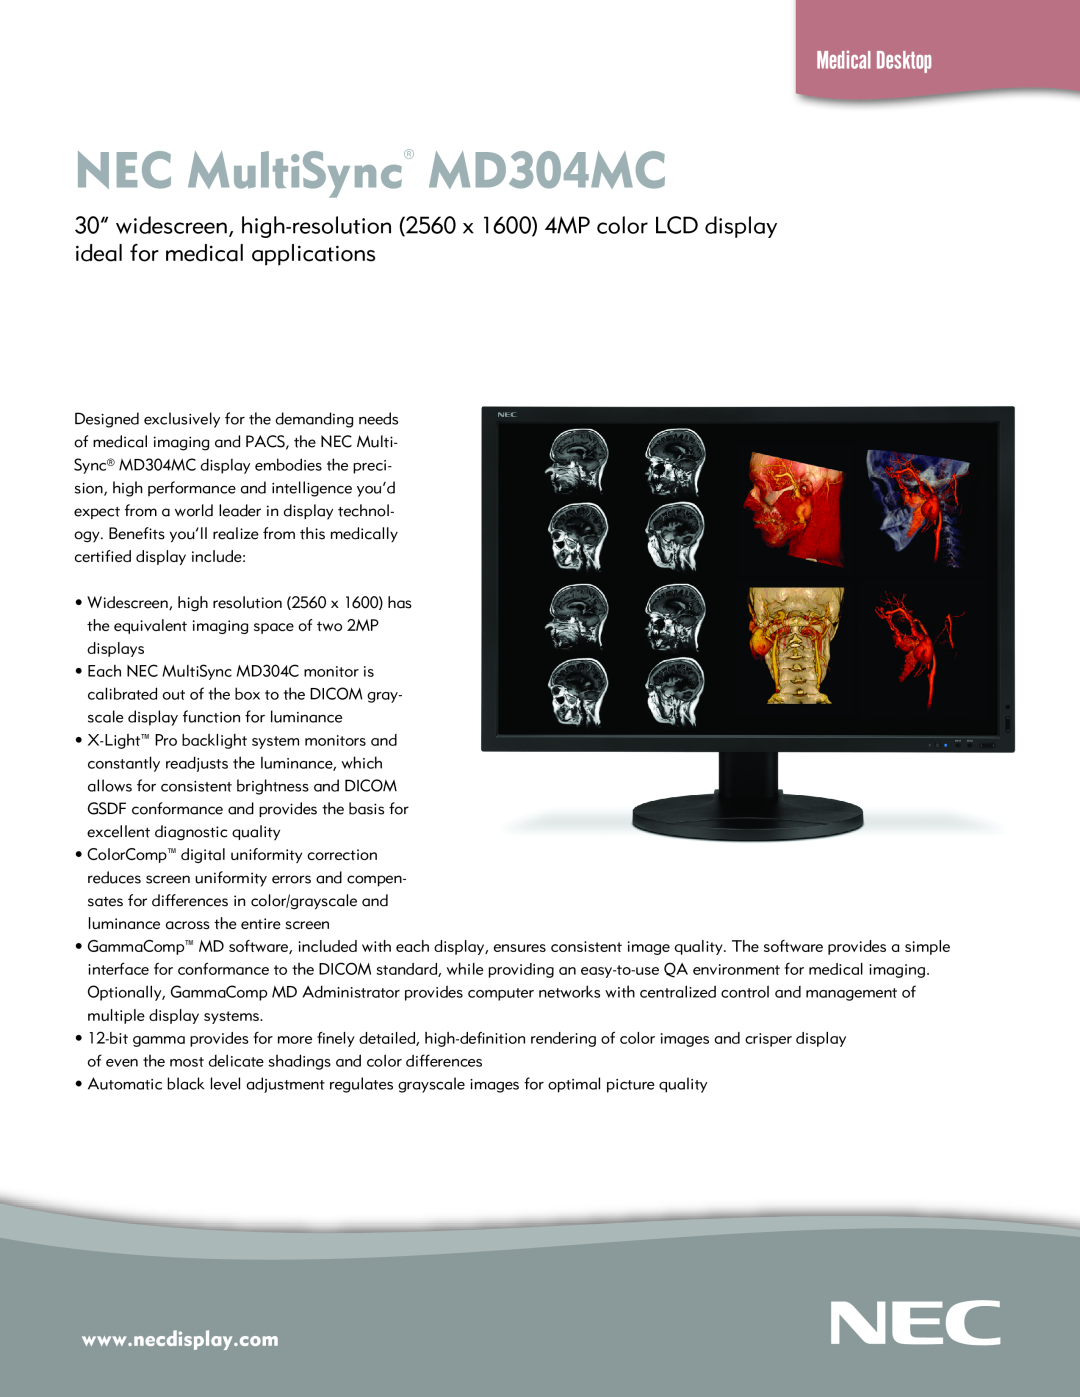 NEC manual NEC MultiSync MD304MC, Medical Desktop 